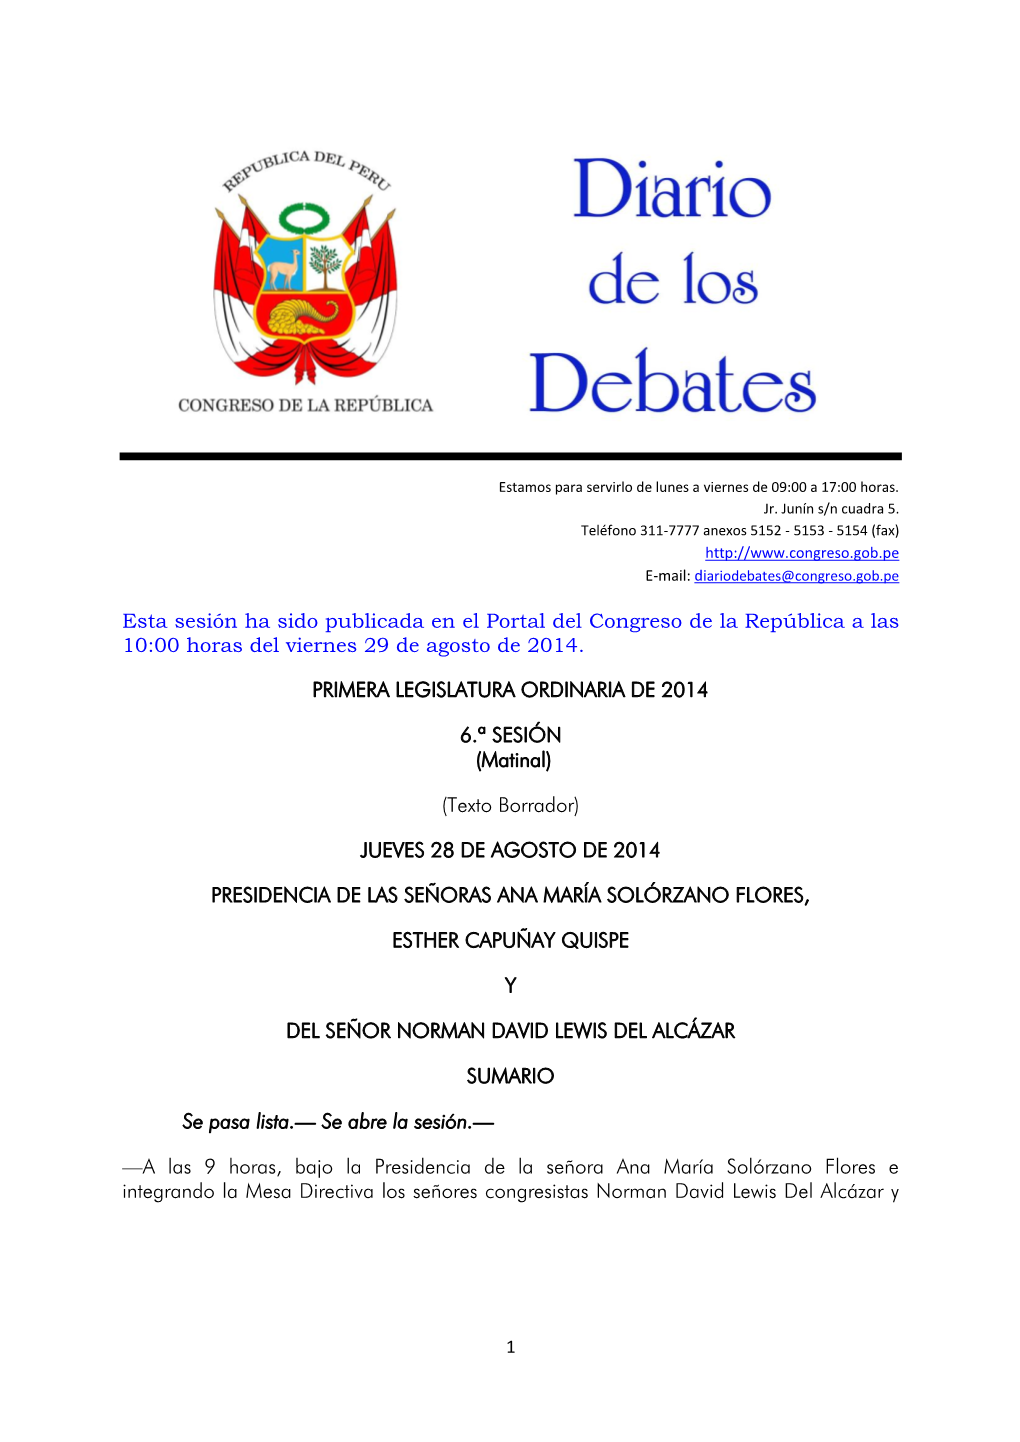 Esta Sesión Ha Sido Publicada En El Portal Del Congreso De La República a Las 10:00 Horas Del Viernes 29 De Agosto De 2014